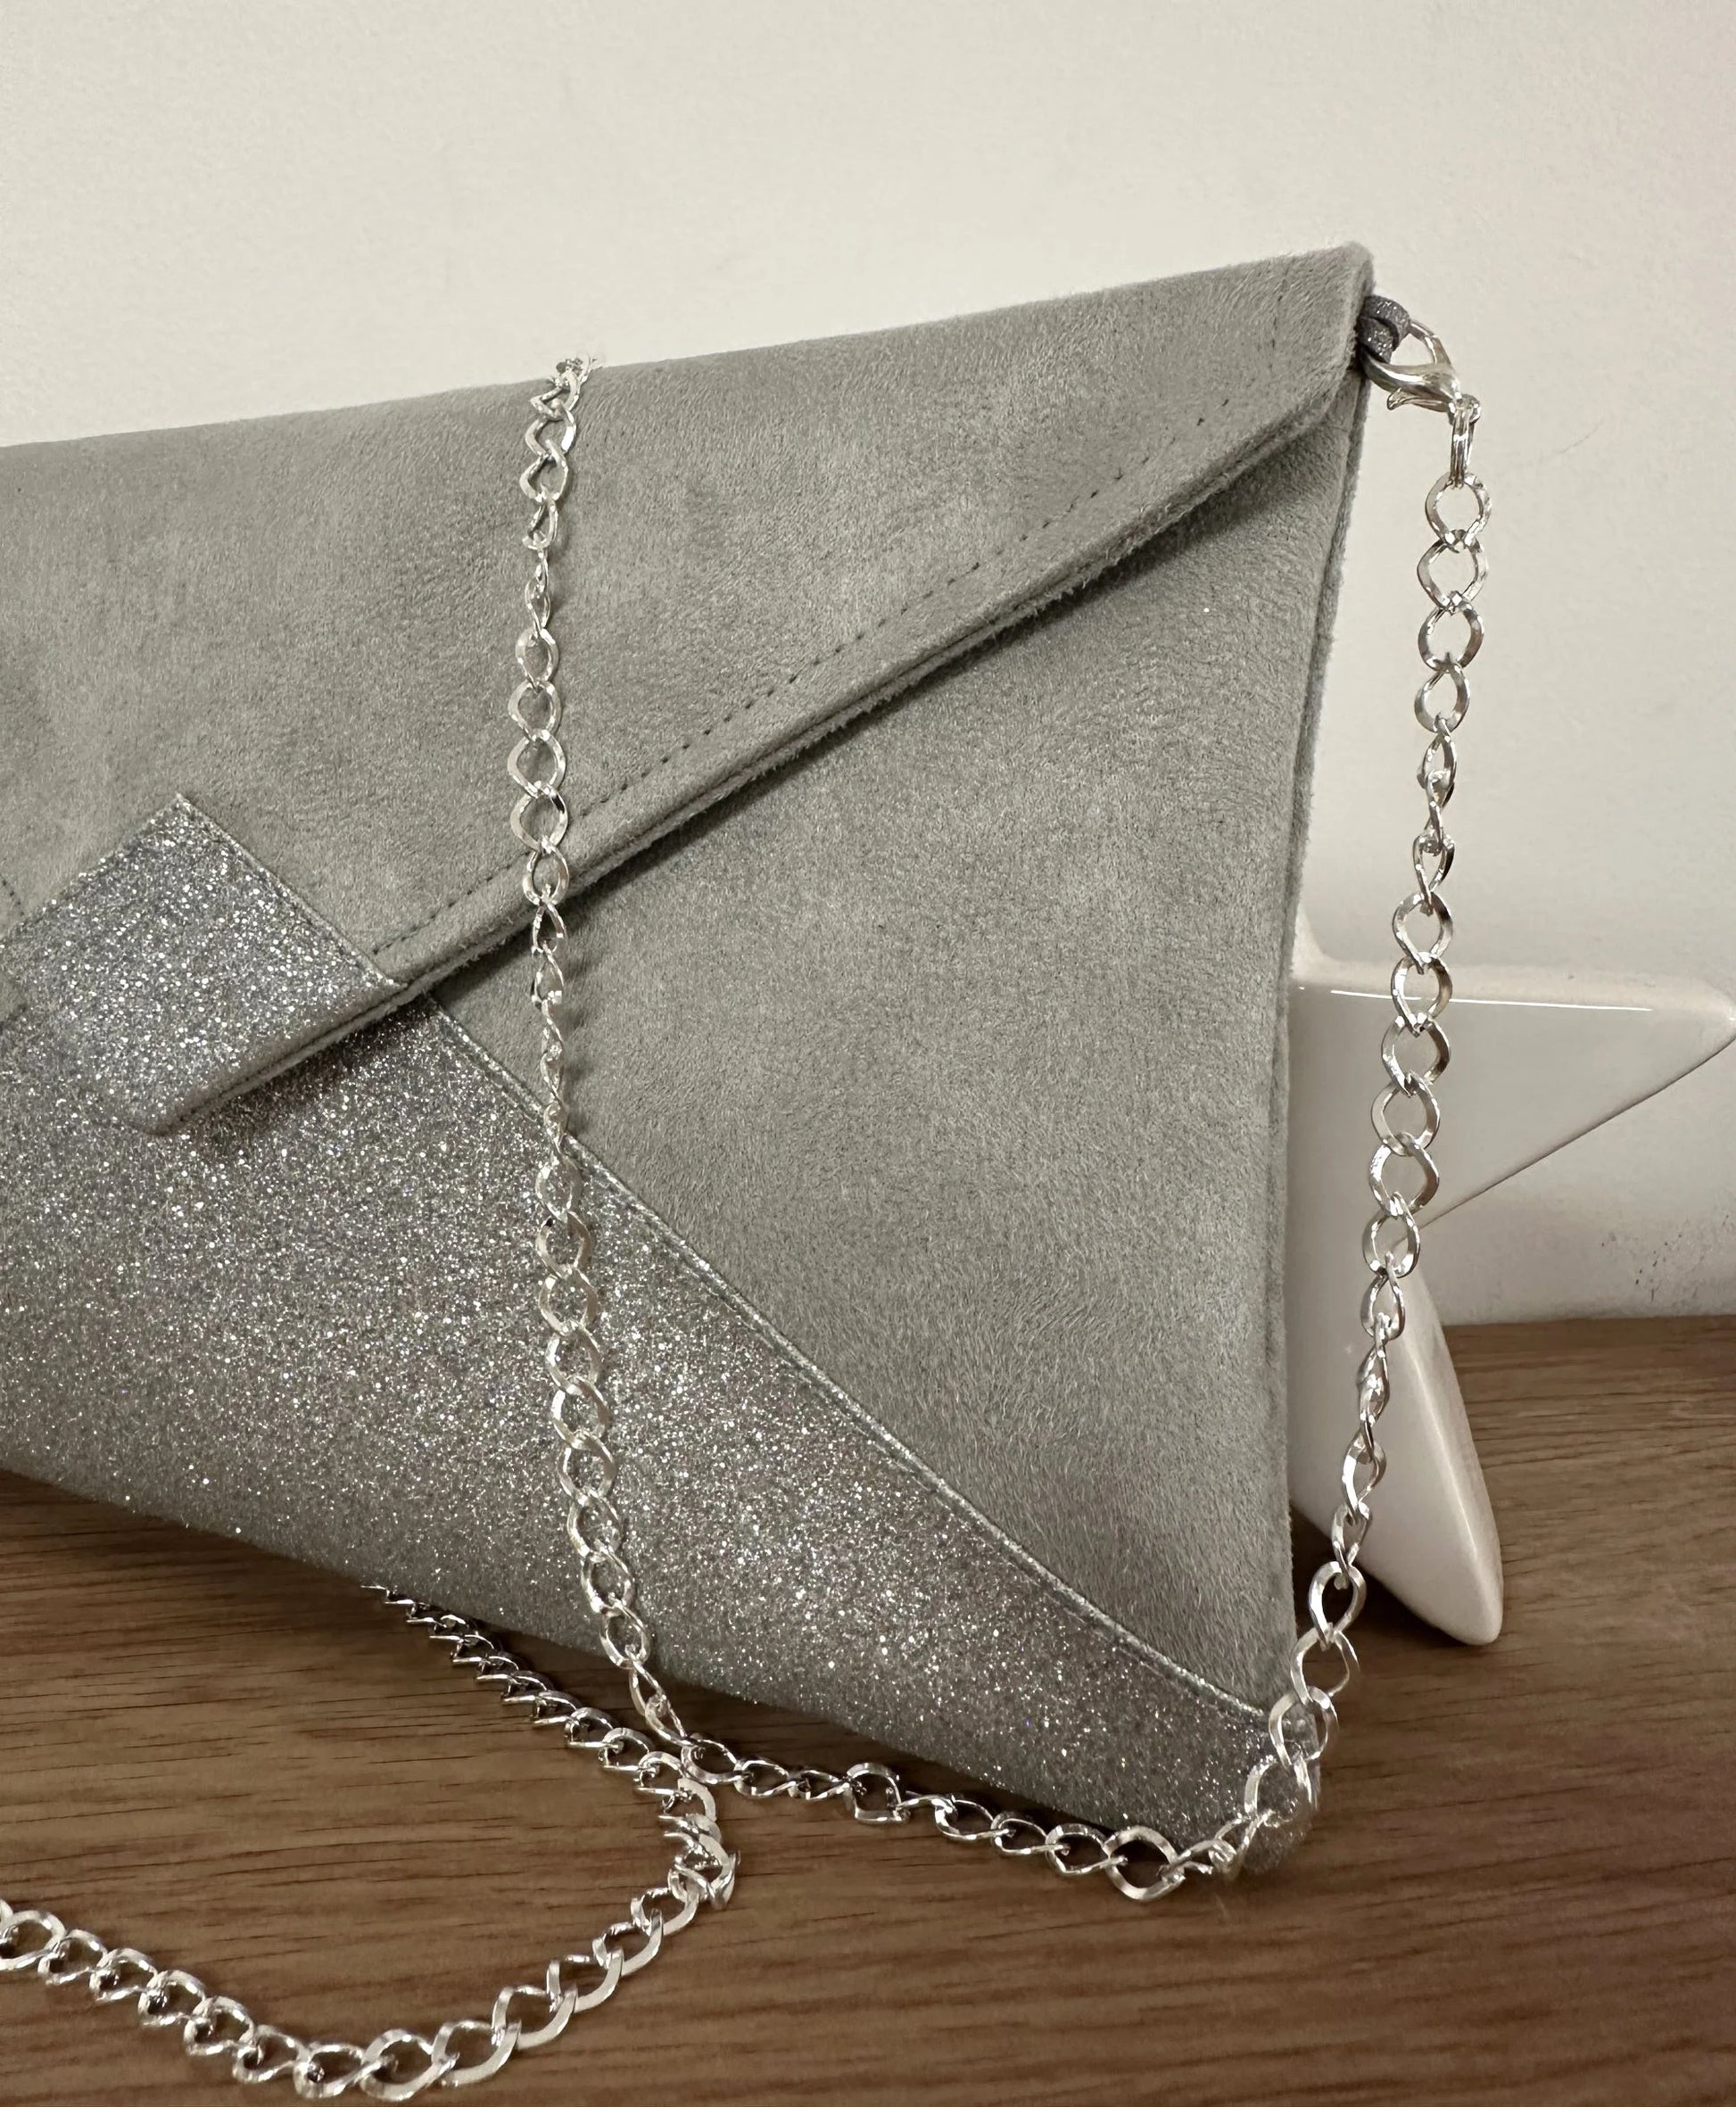 Vue détaillée du sac pochette Isa gris perle à paillettes argentées, avec sa chainette.